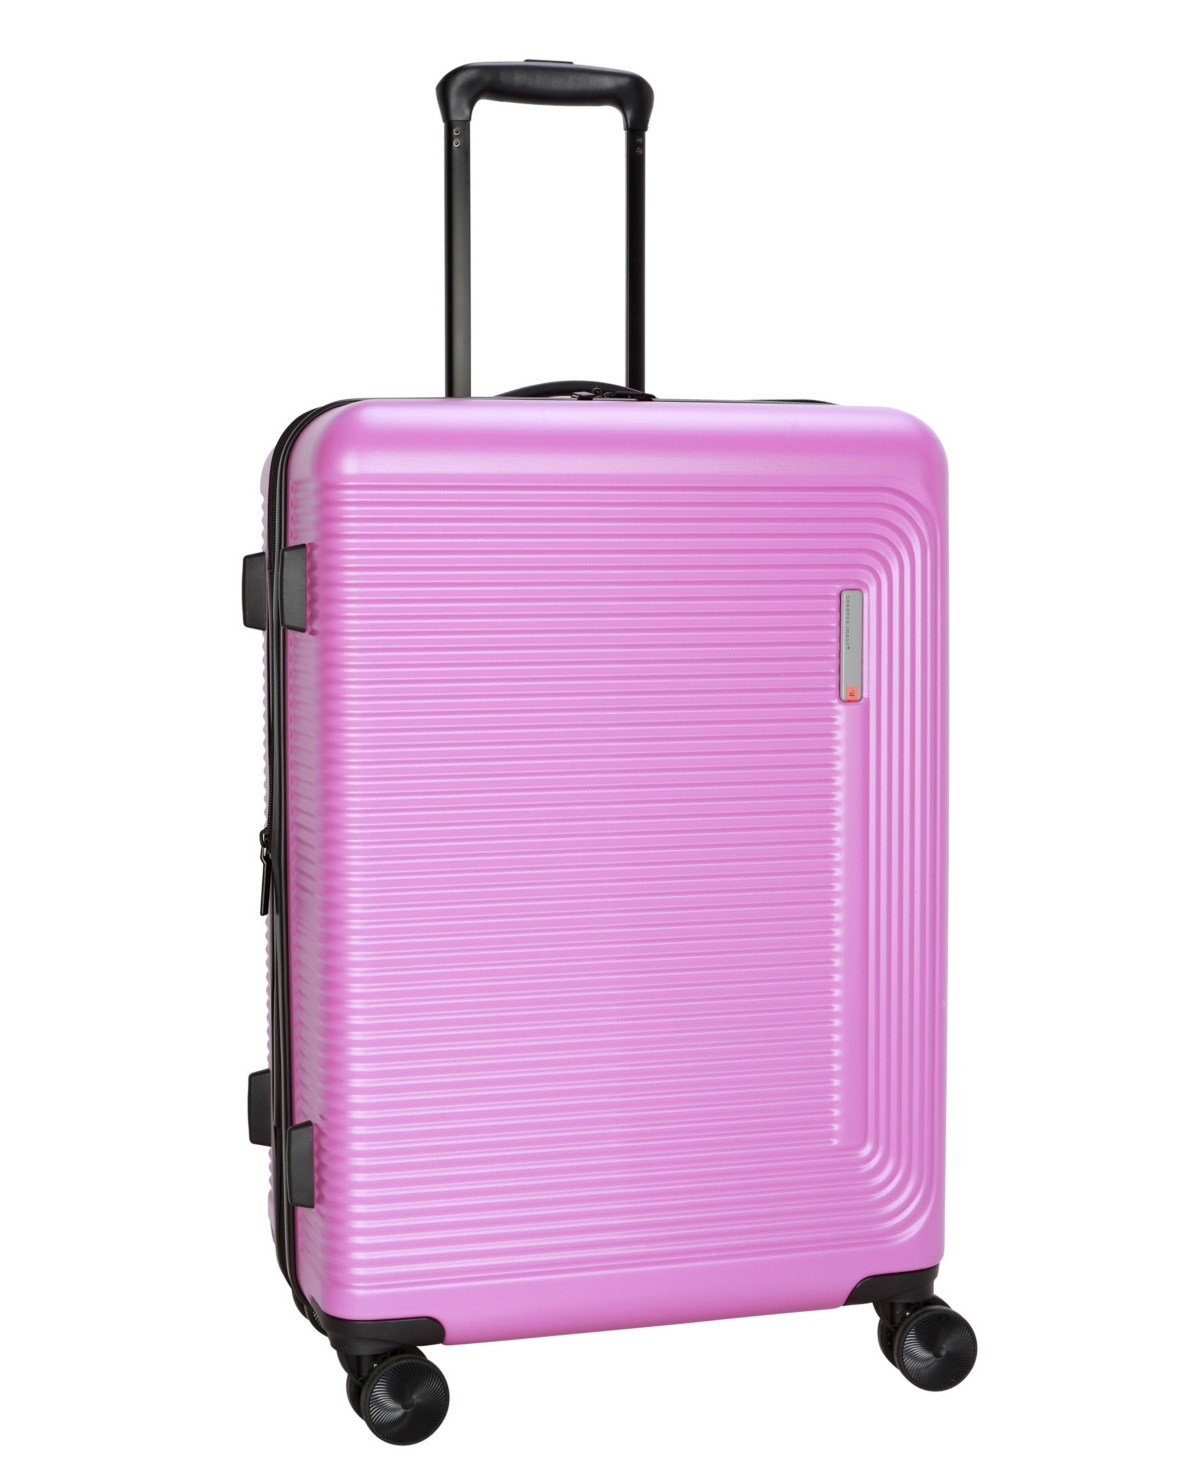 Sharper Image Journey Lite 24" Hardside Luggage In Lilac